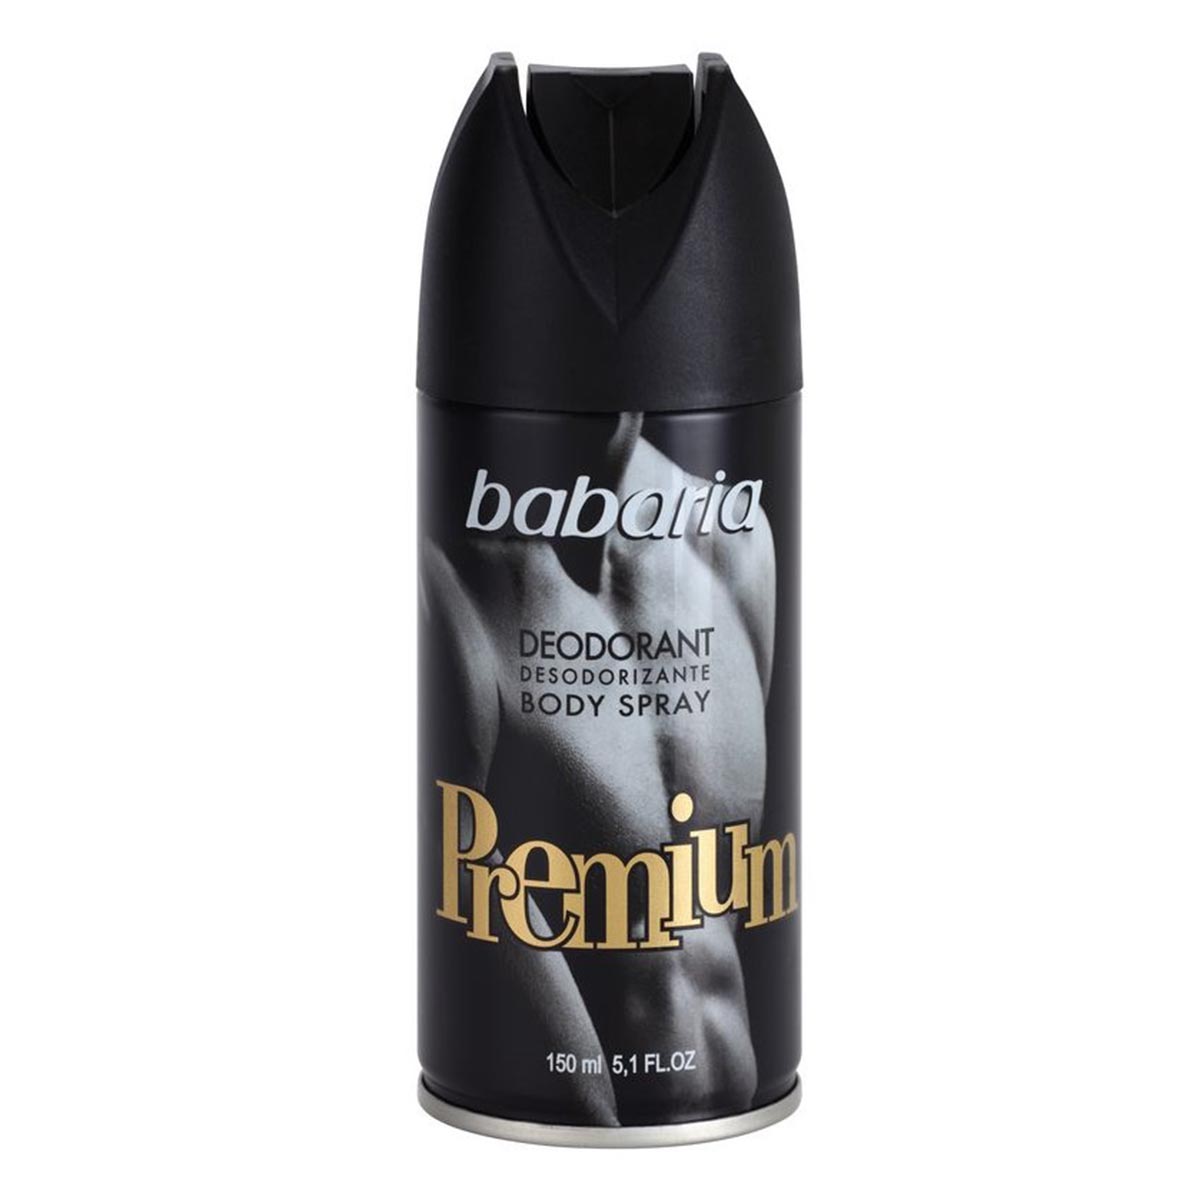 Image of Babaria Premium Deodorante Spray 150ml+50ml Gratis